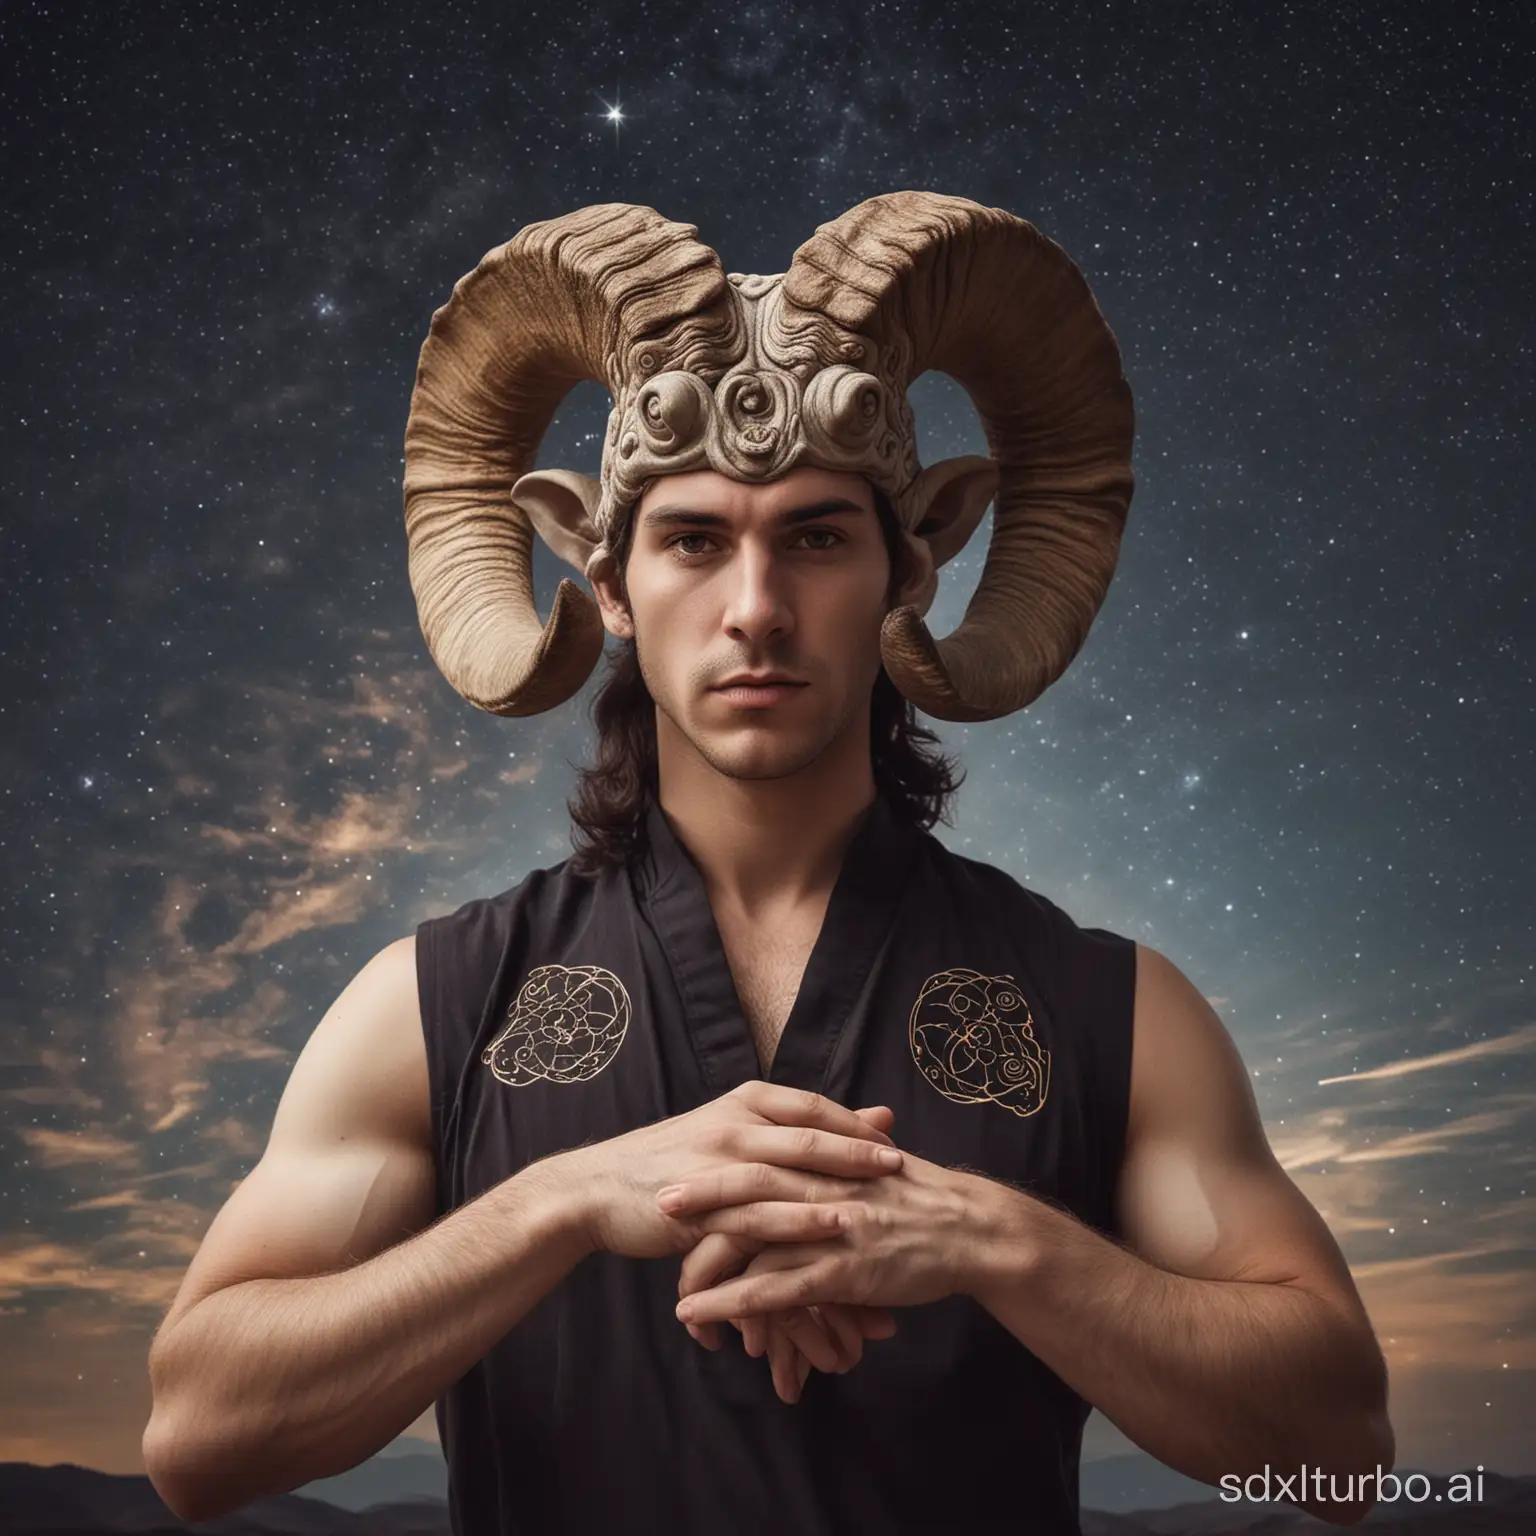 Сделай фотографию мужчины, который является олицетворением знака зодиака овен